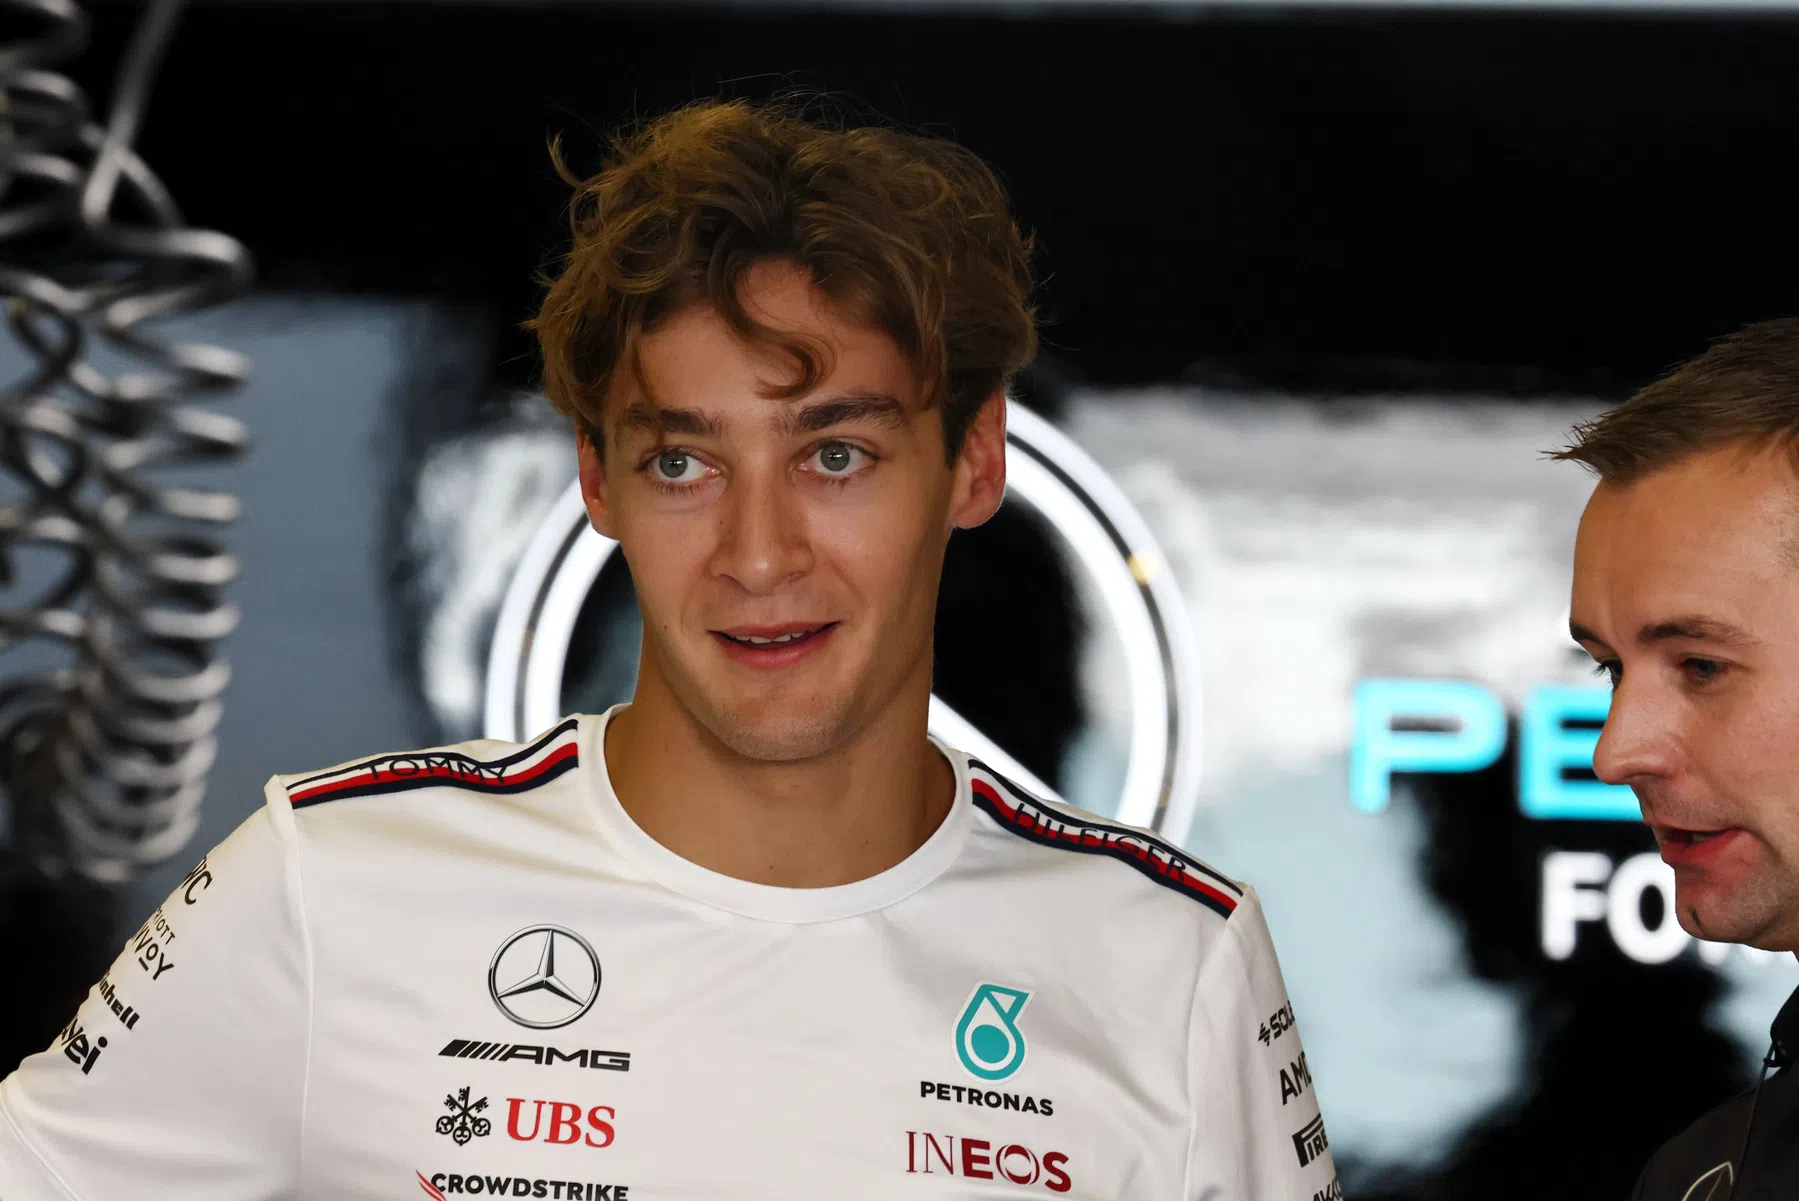 Trulli über junge Fahrer in der Formel 1